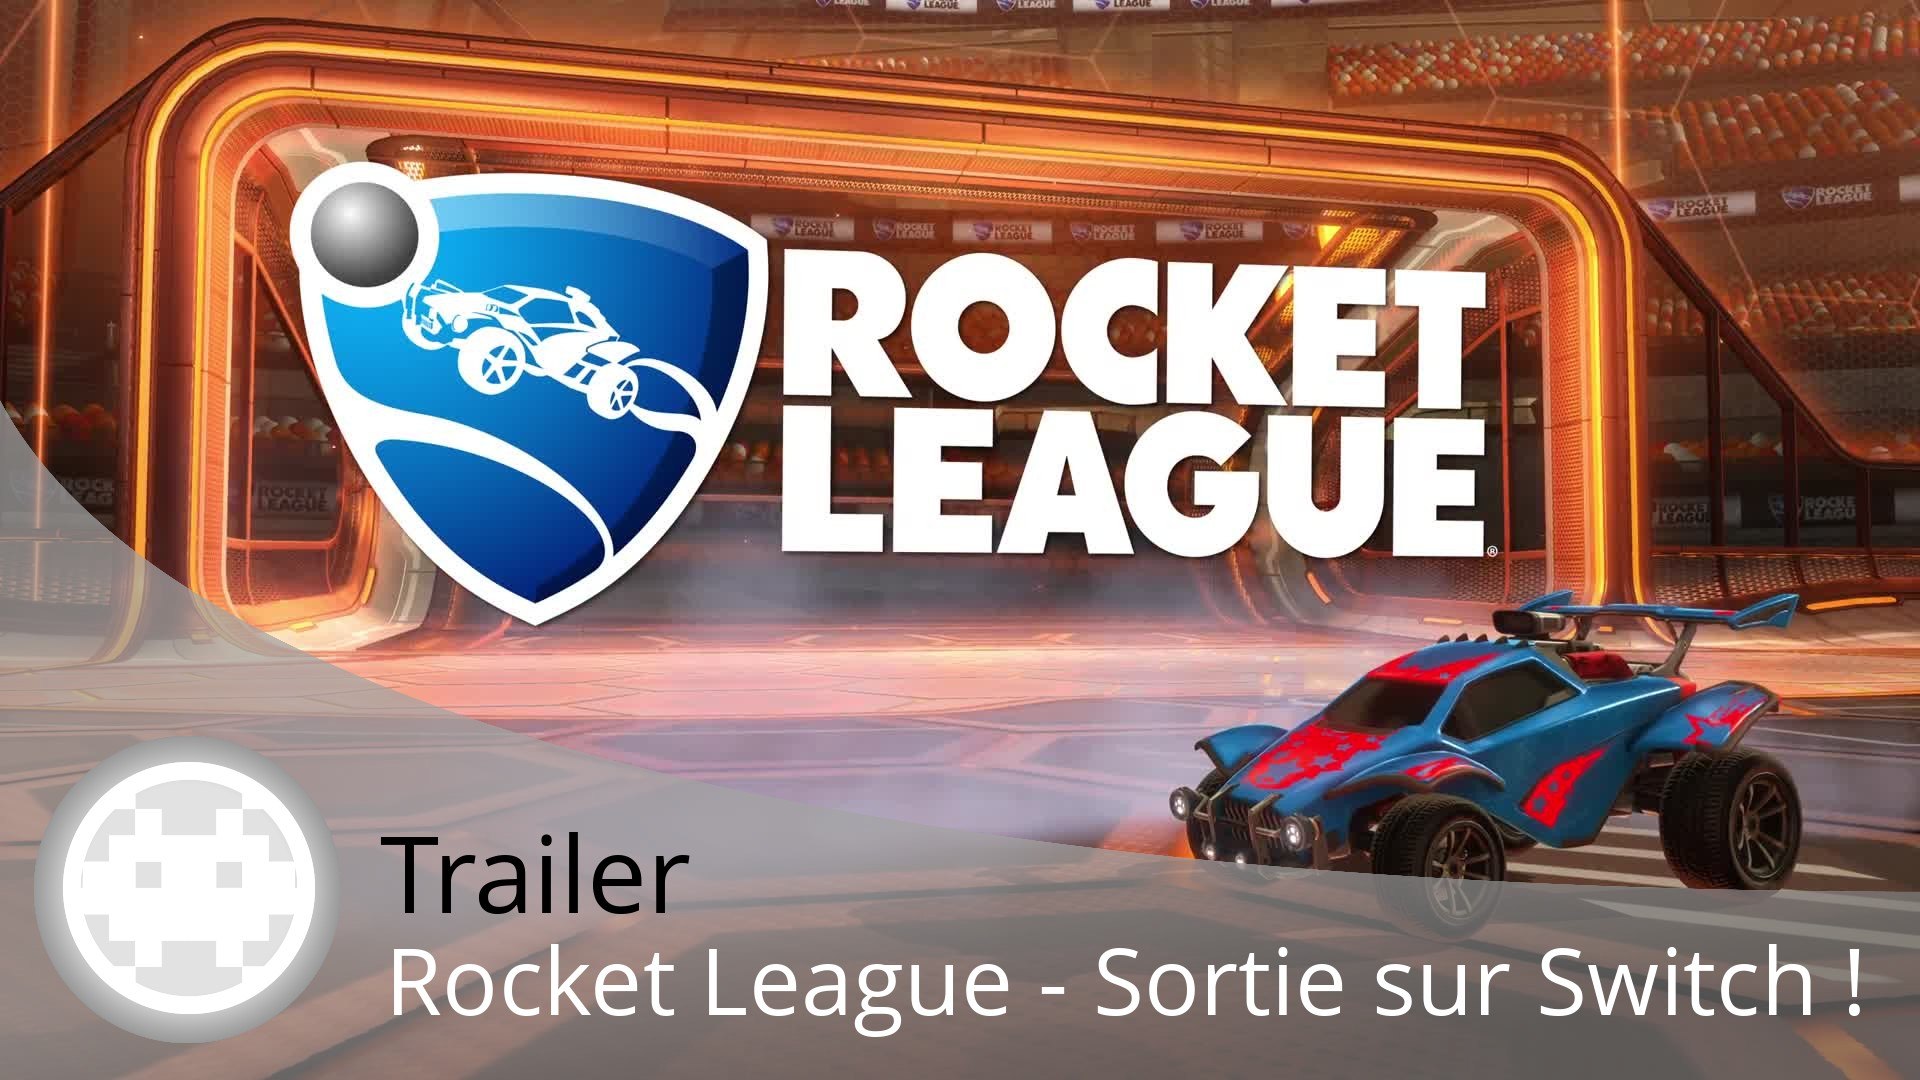 Trailer - Rocket League - Sortie sur Nintendo Switch en Cross-Network ! -  Vidéo Dailymotion